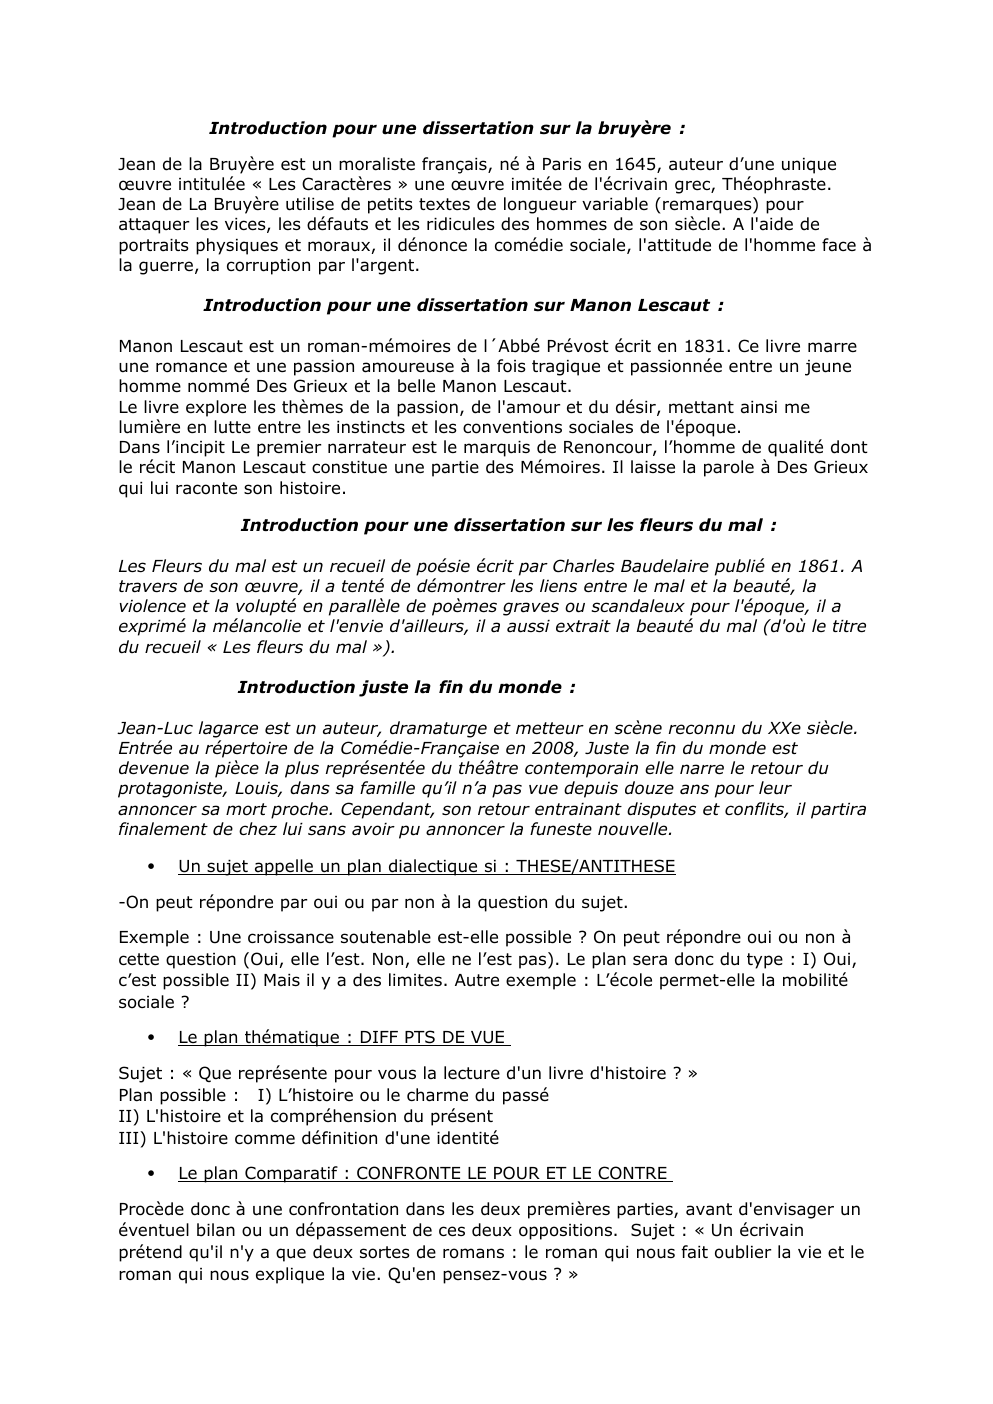 Prévisualisation du document introduction relative au œuvres du bac de Français 2023 et différents plan possibles pour la dissertation